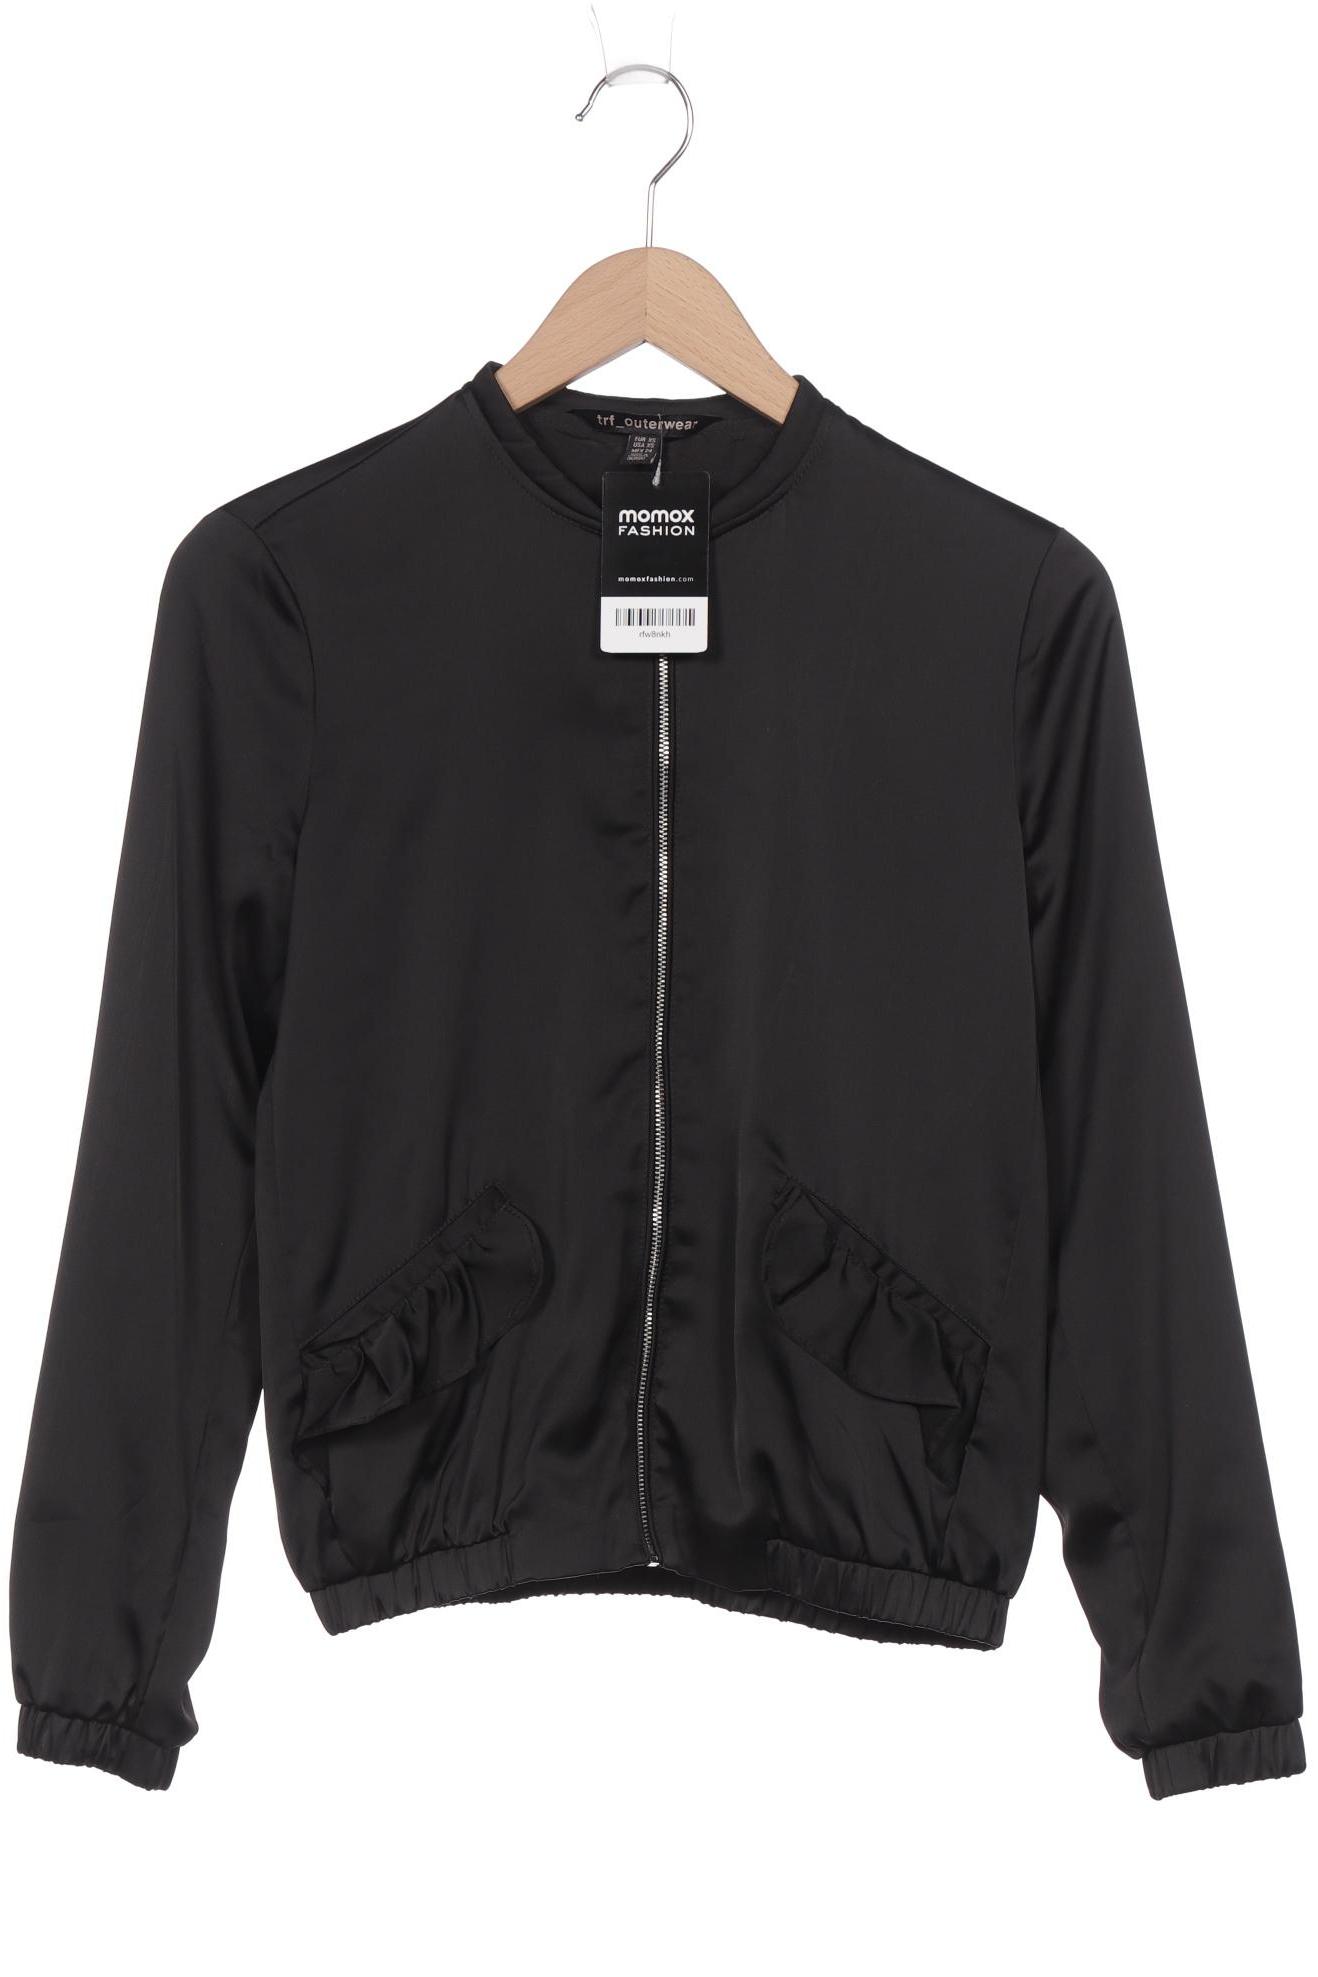 TRF by Zara Damen Sweatshirt, schwarz, Gr. 34 von TRF by Zara